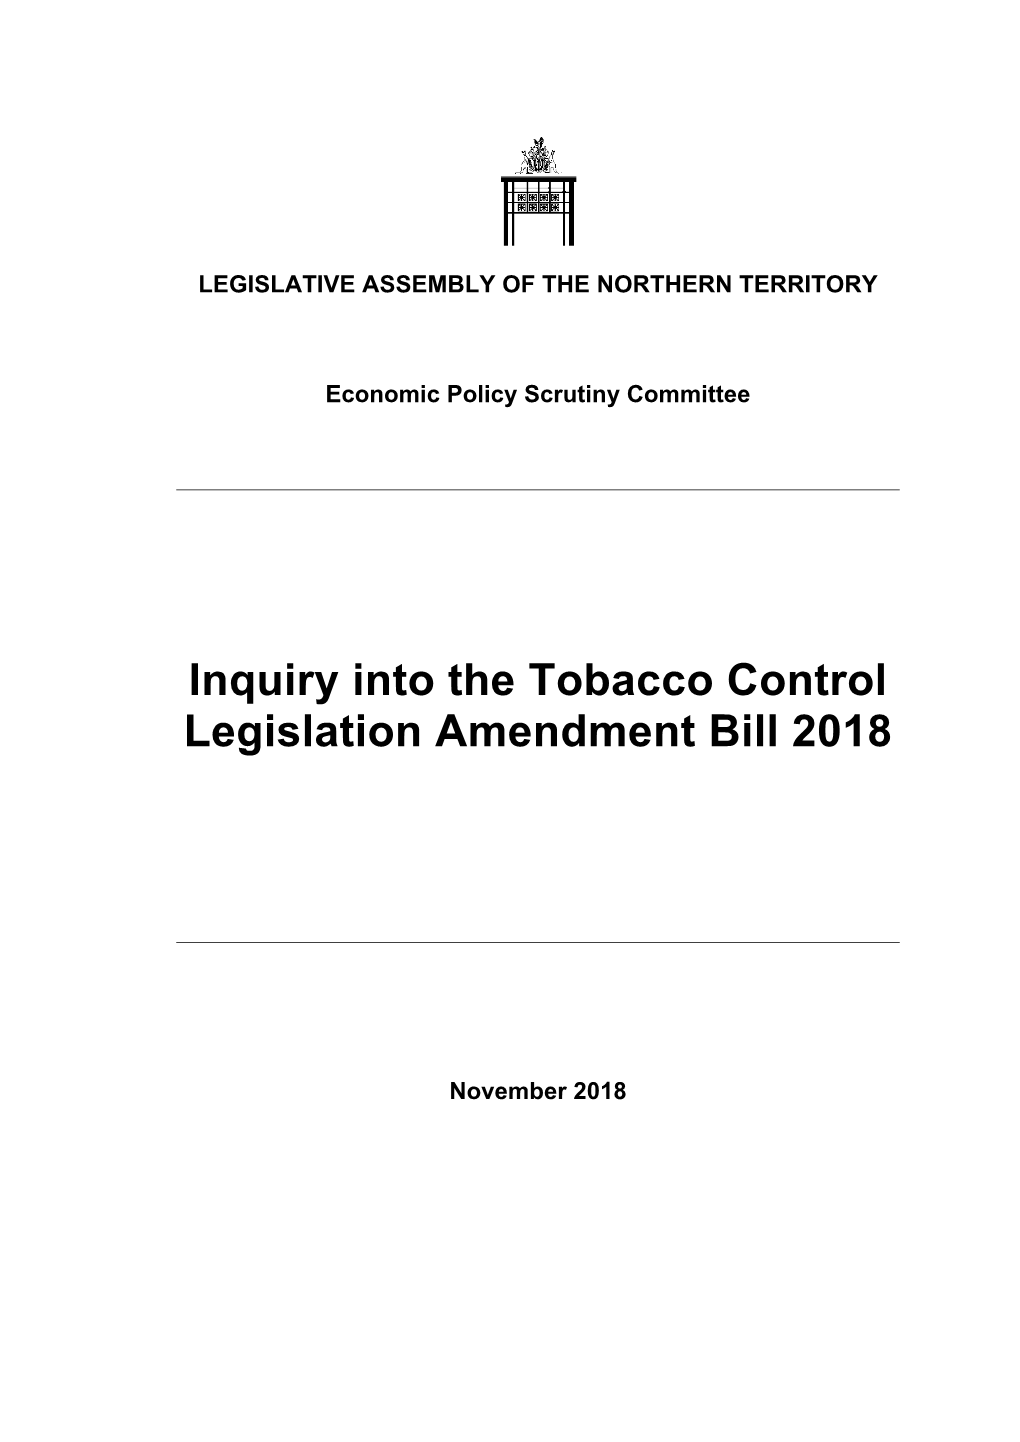 Inquiry Into the Tobacco Control Legislation Amendment Bill 2018